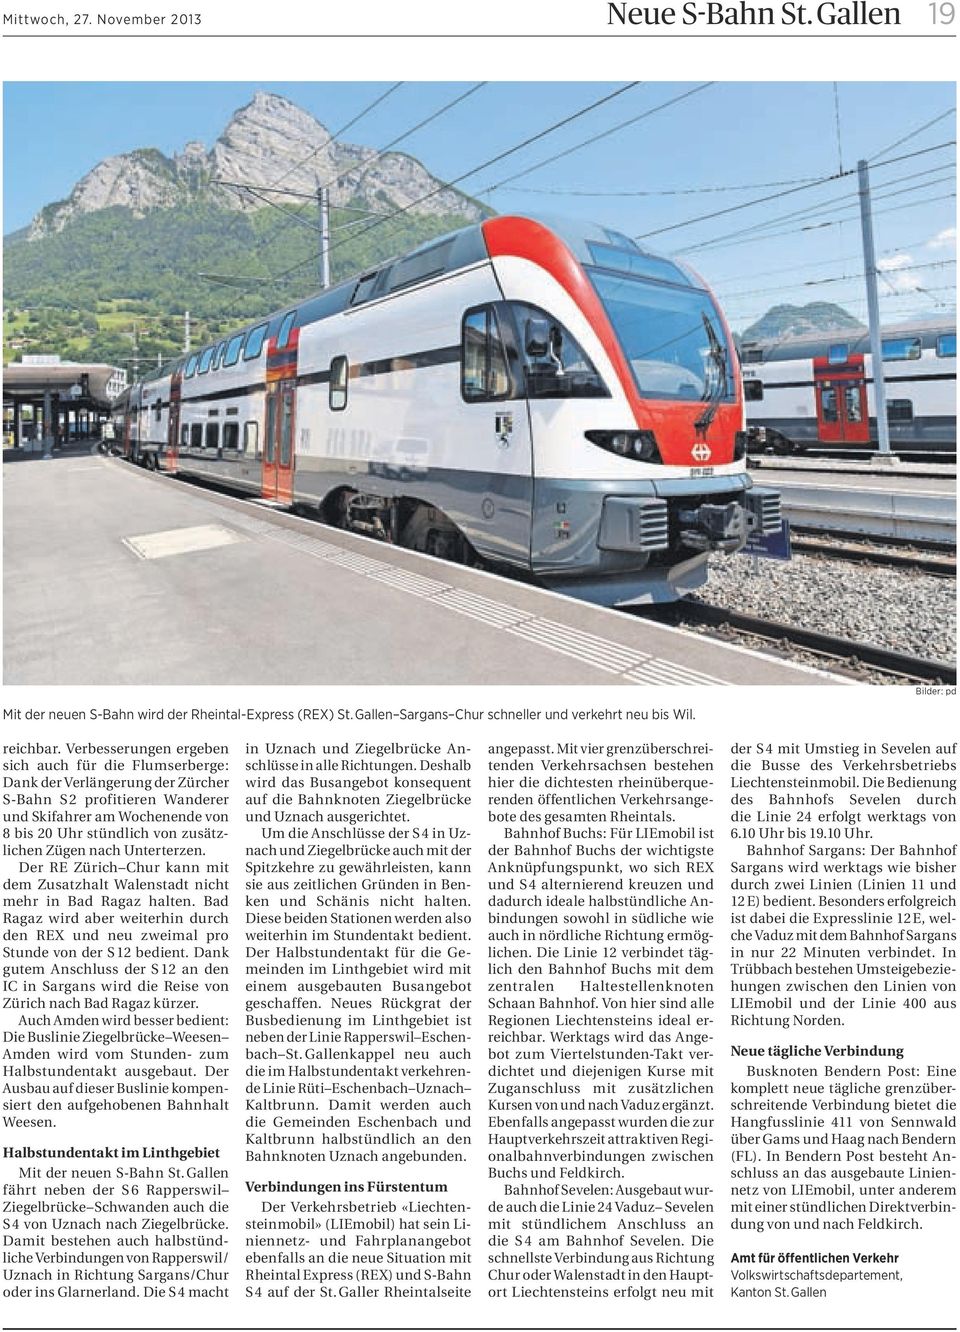 nach Unterterzen. Der RE Zürich Chur kann mit dem Zusatzhalt Walenstadt nicht mehr in Bad Ragaz halten. Bad Ragaz wird aber weiterhin durch den REX und neu zweimal pro Stunde von der S 12 bedient.